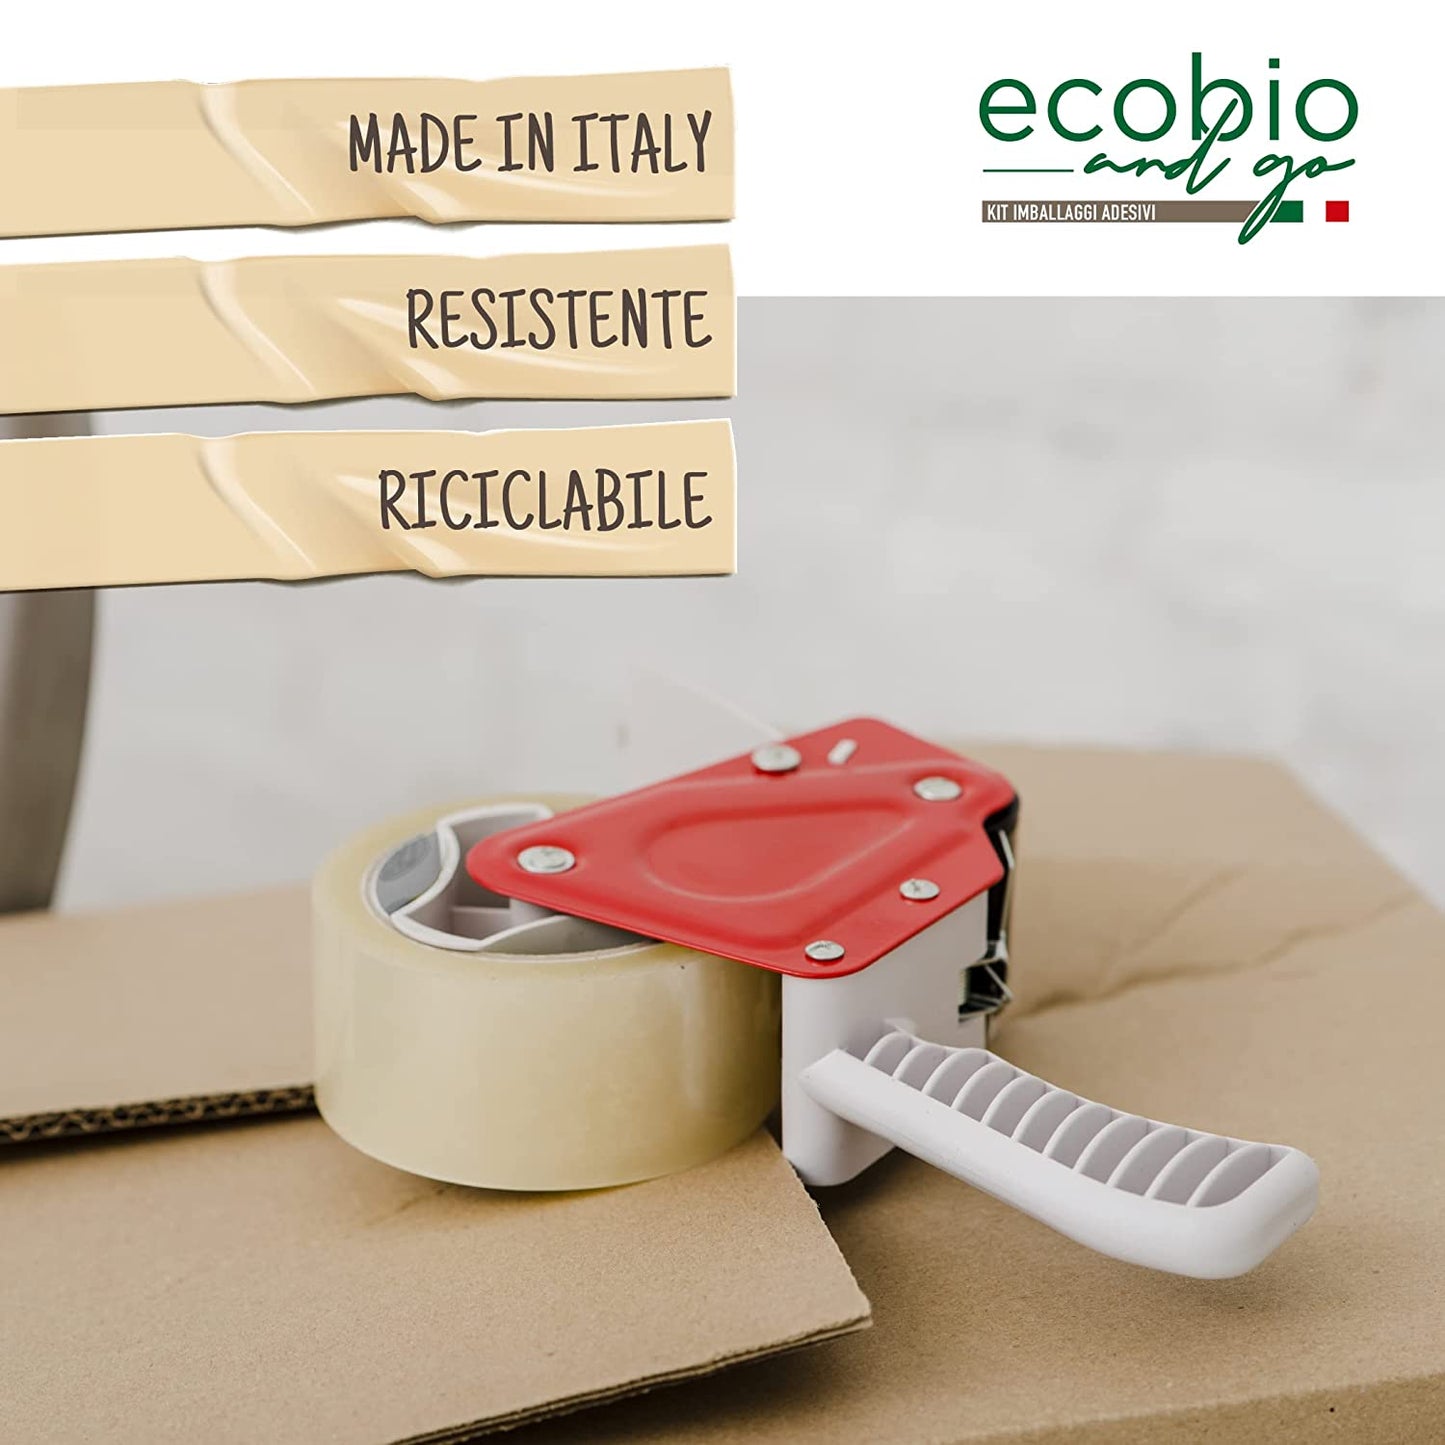 Ecobio and Go Nastro Adesivo Imballaggio 50x66m - Silenzioso e Resistente all'Acqua (TRASPARENTE)